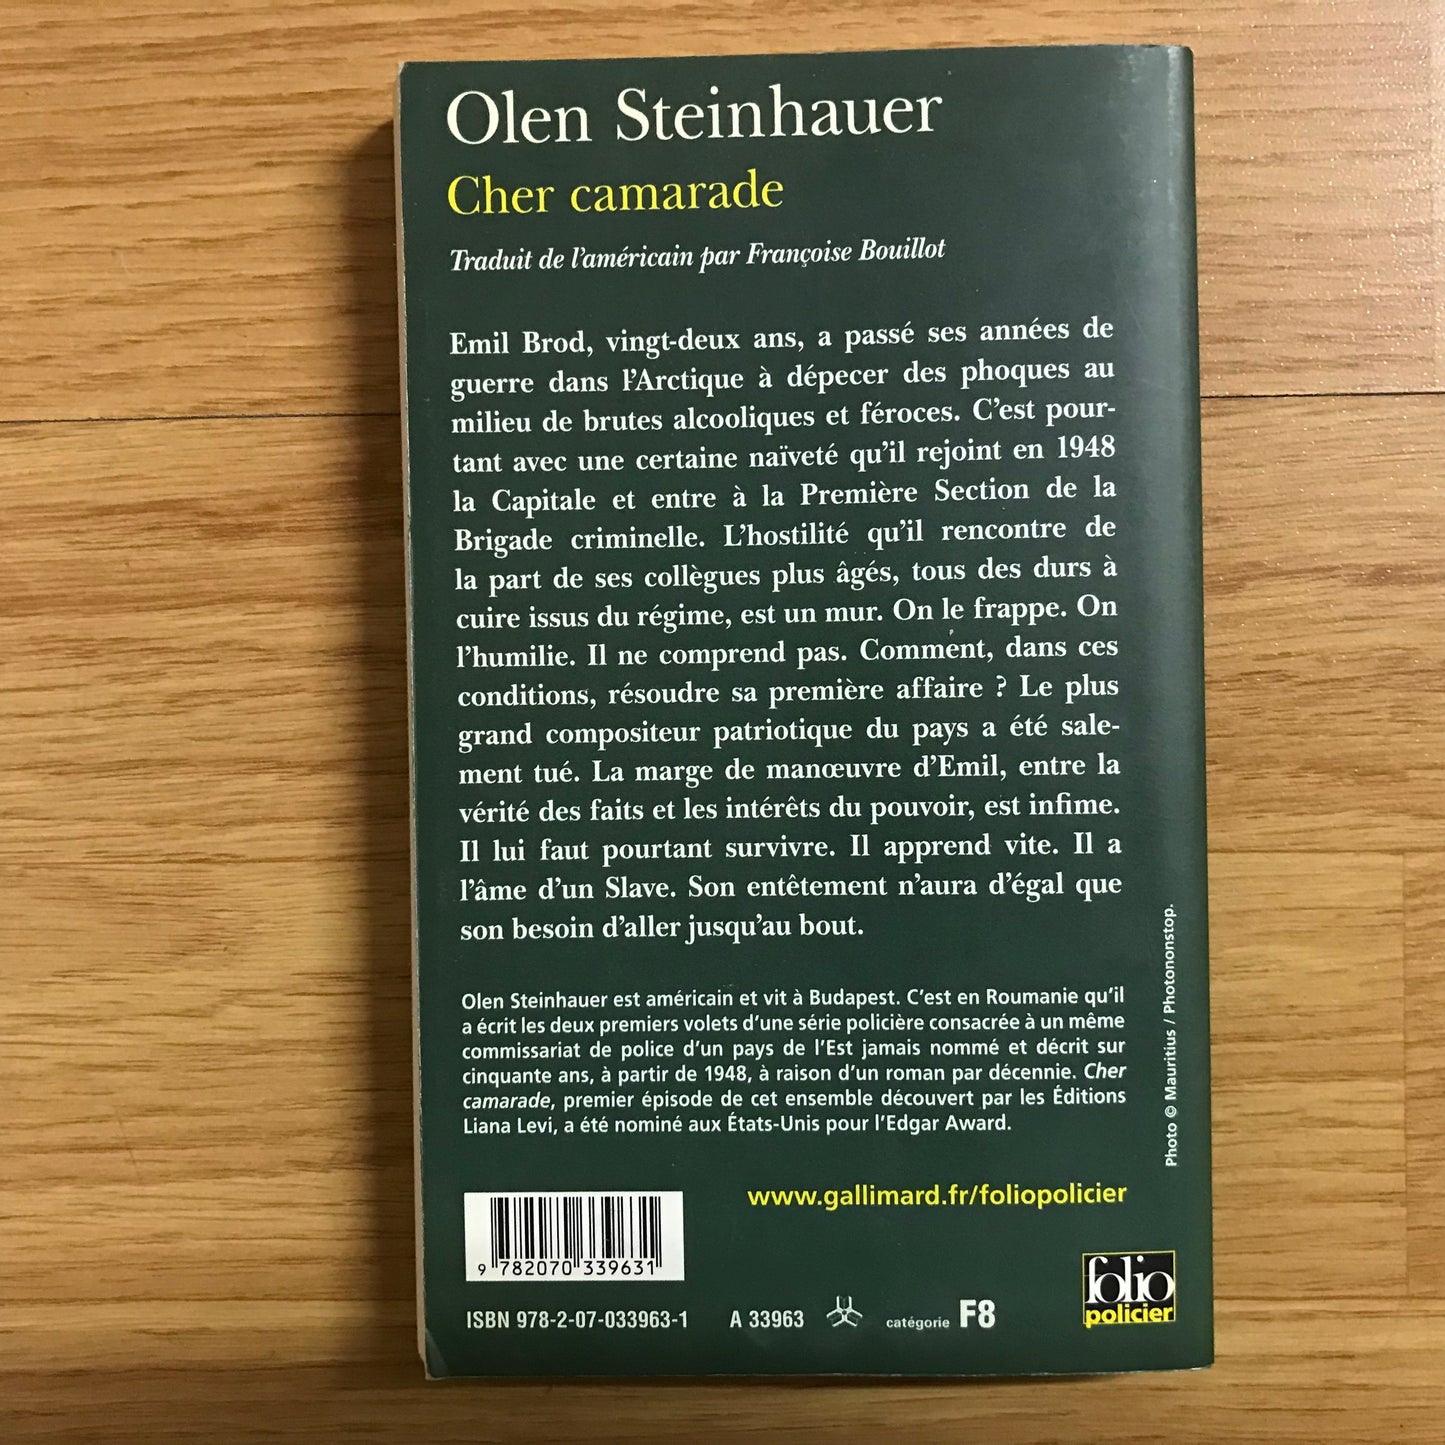 Steinhauer, Olen - Cher camarade